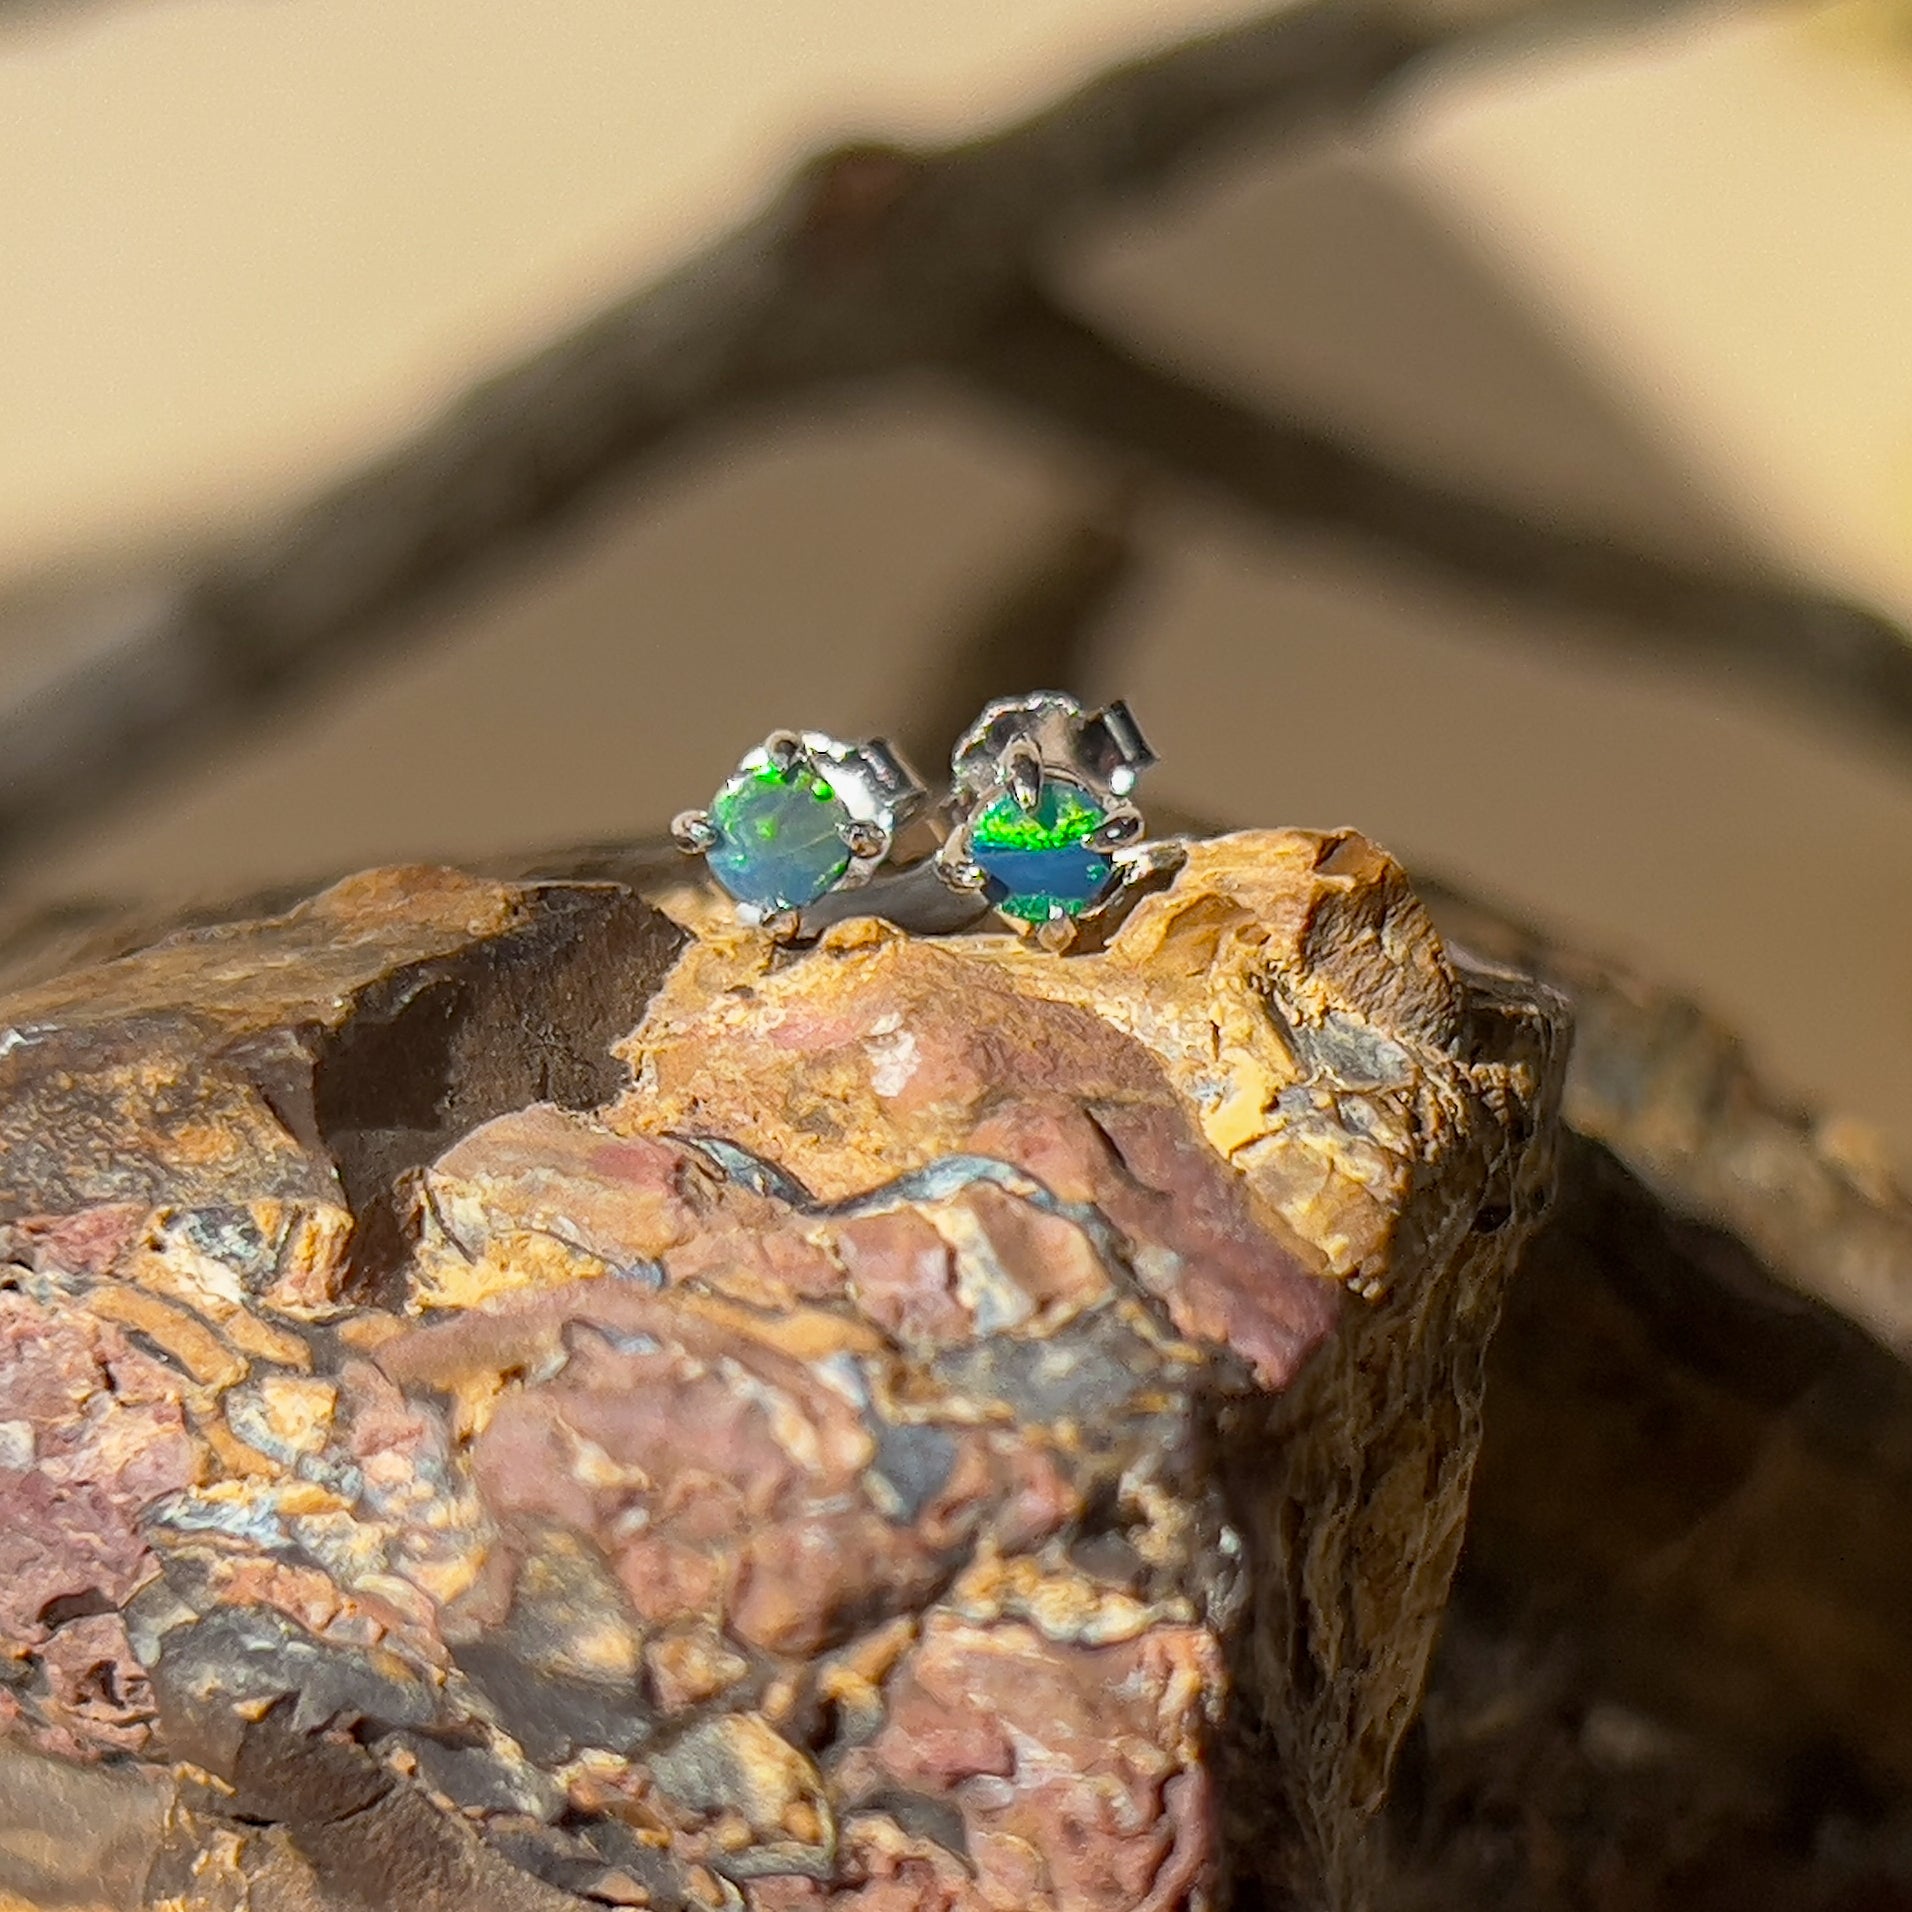 Sterling Silver 3mm Doublet Opal earrings 4 claw studs - Masterpiece Jewellery Opal & Gems Sydney Australia | Online Shop